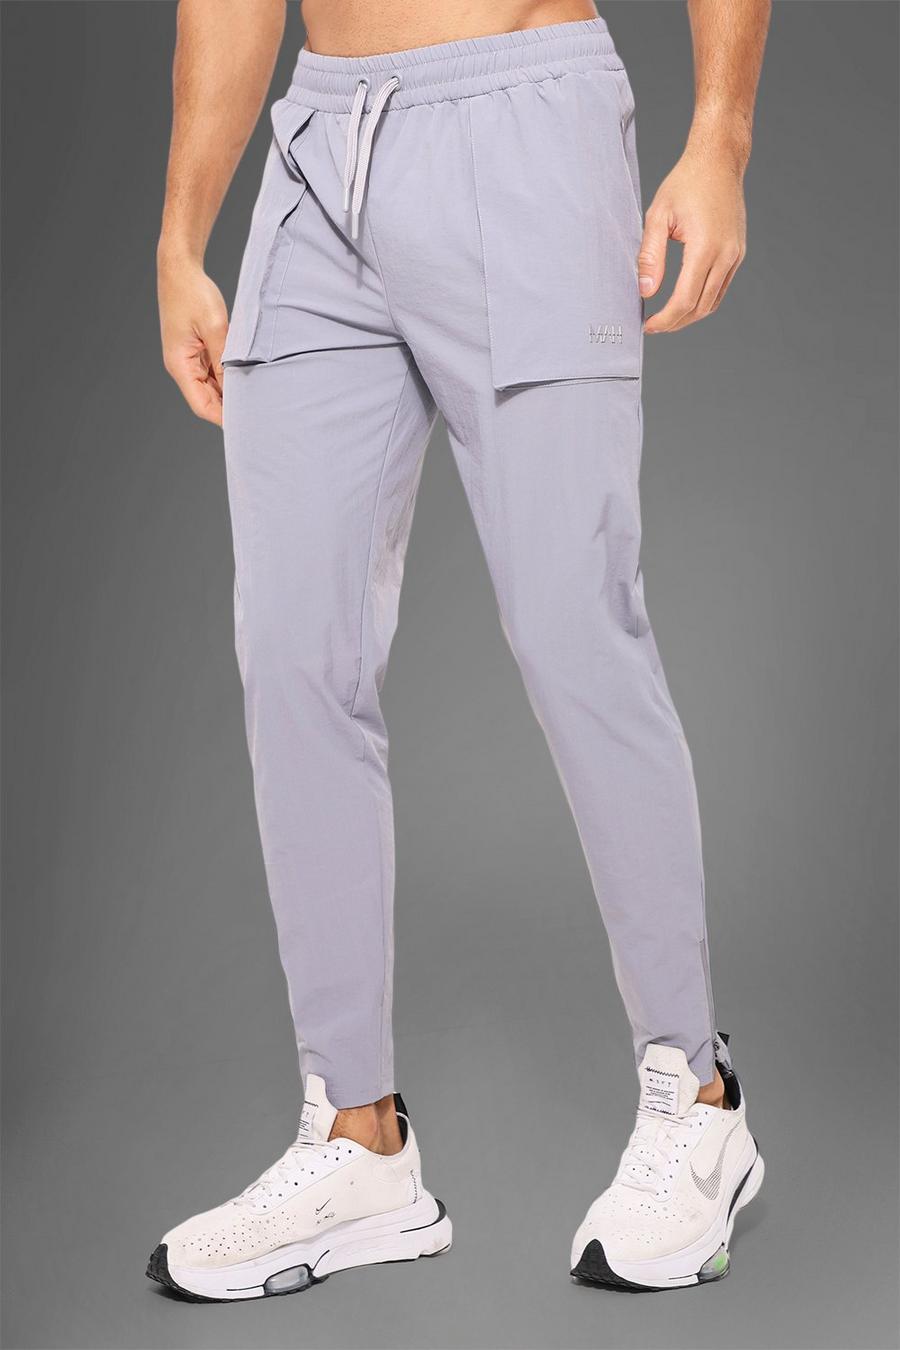 Pantaloni tuta Man Active Gym in nylon con tasche grandi squadrate, Grey